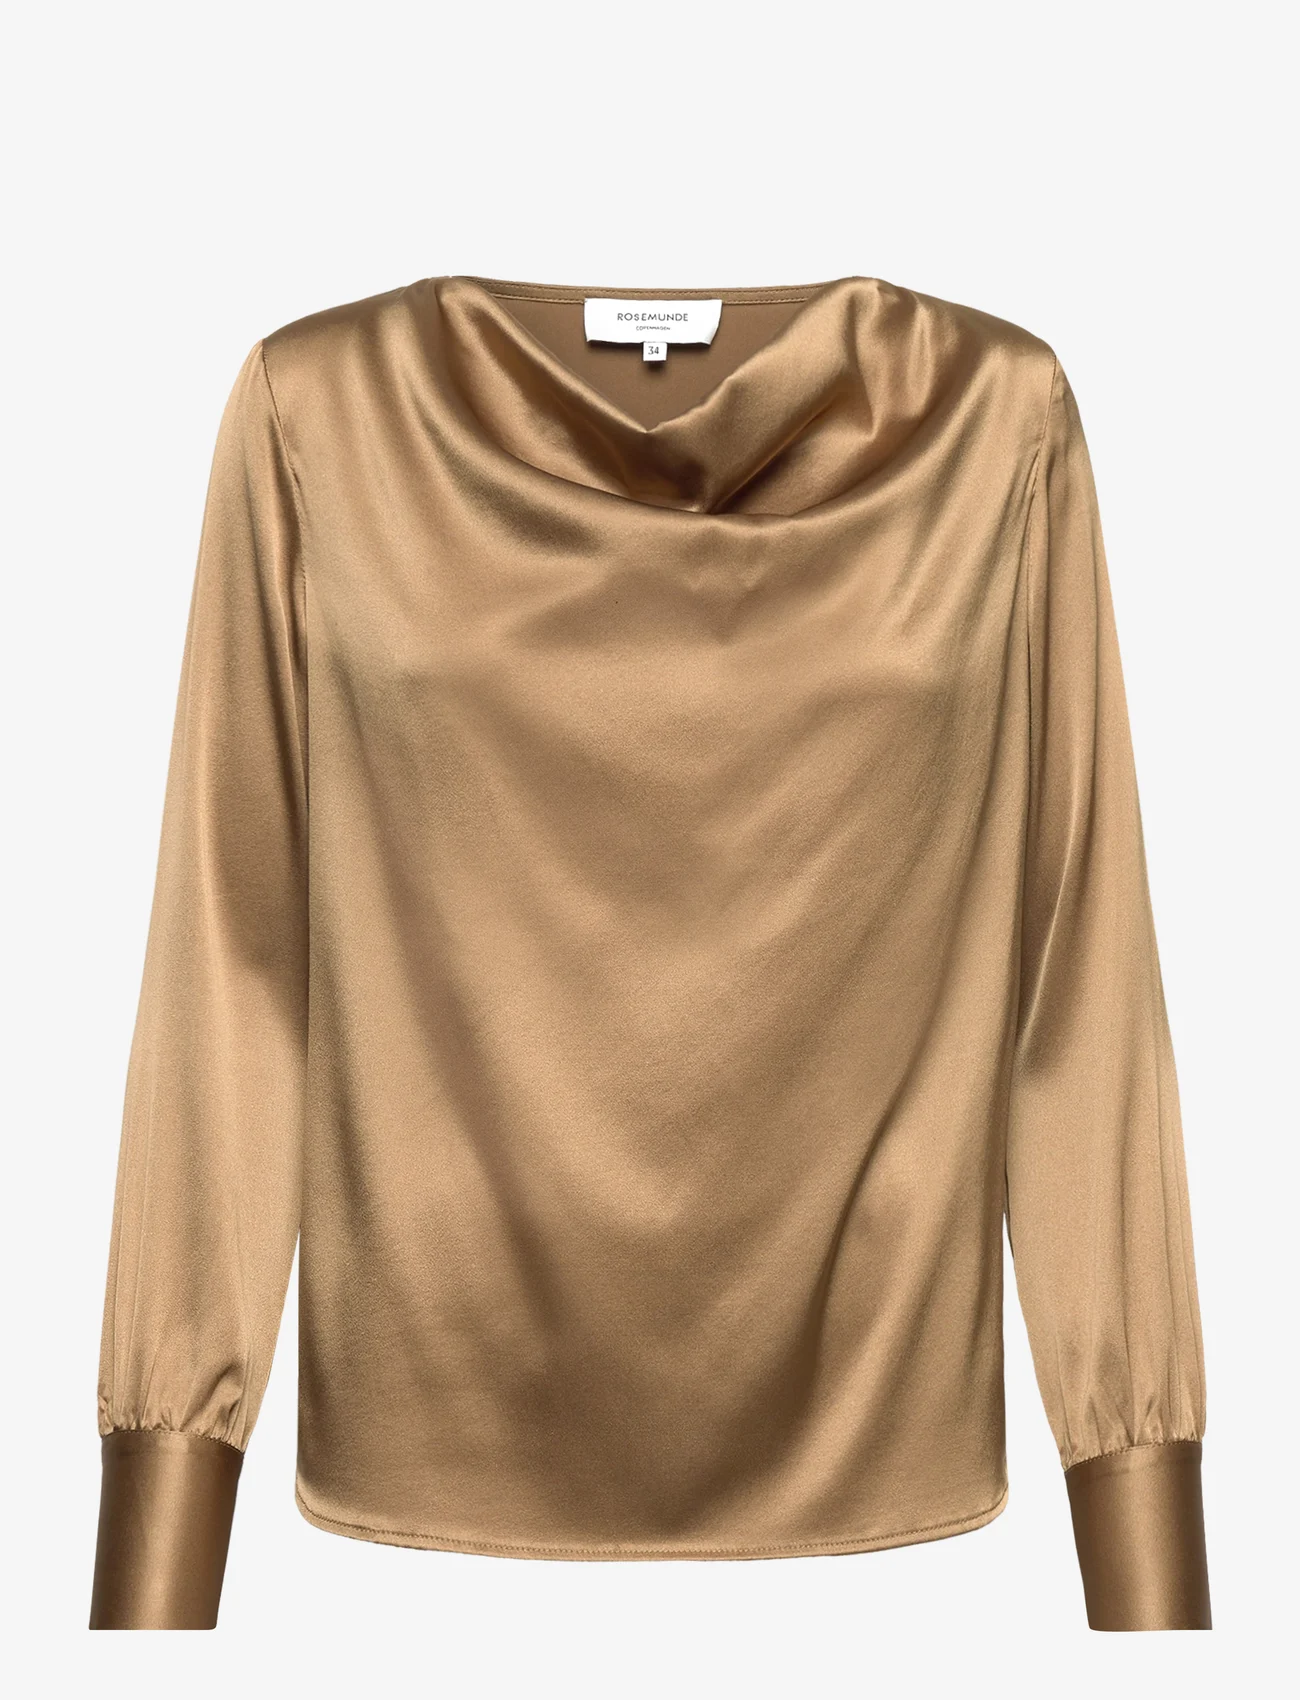 Rosemunde - Silk blouse - langærmede bluser - antique bronze - 0